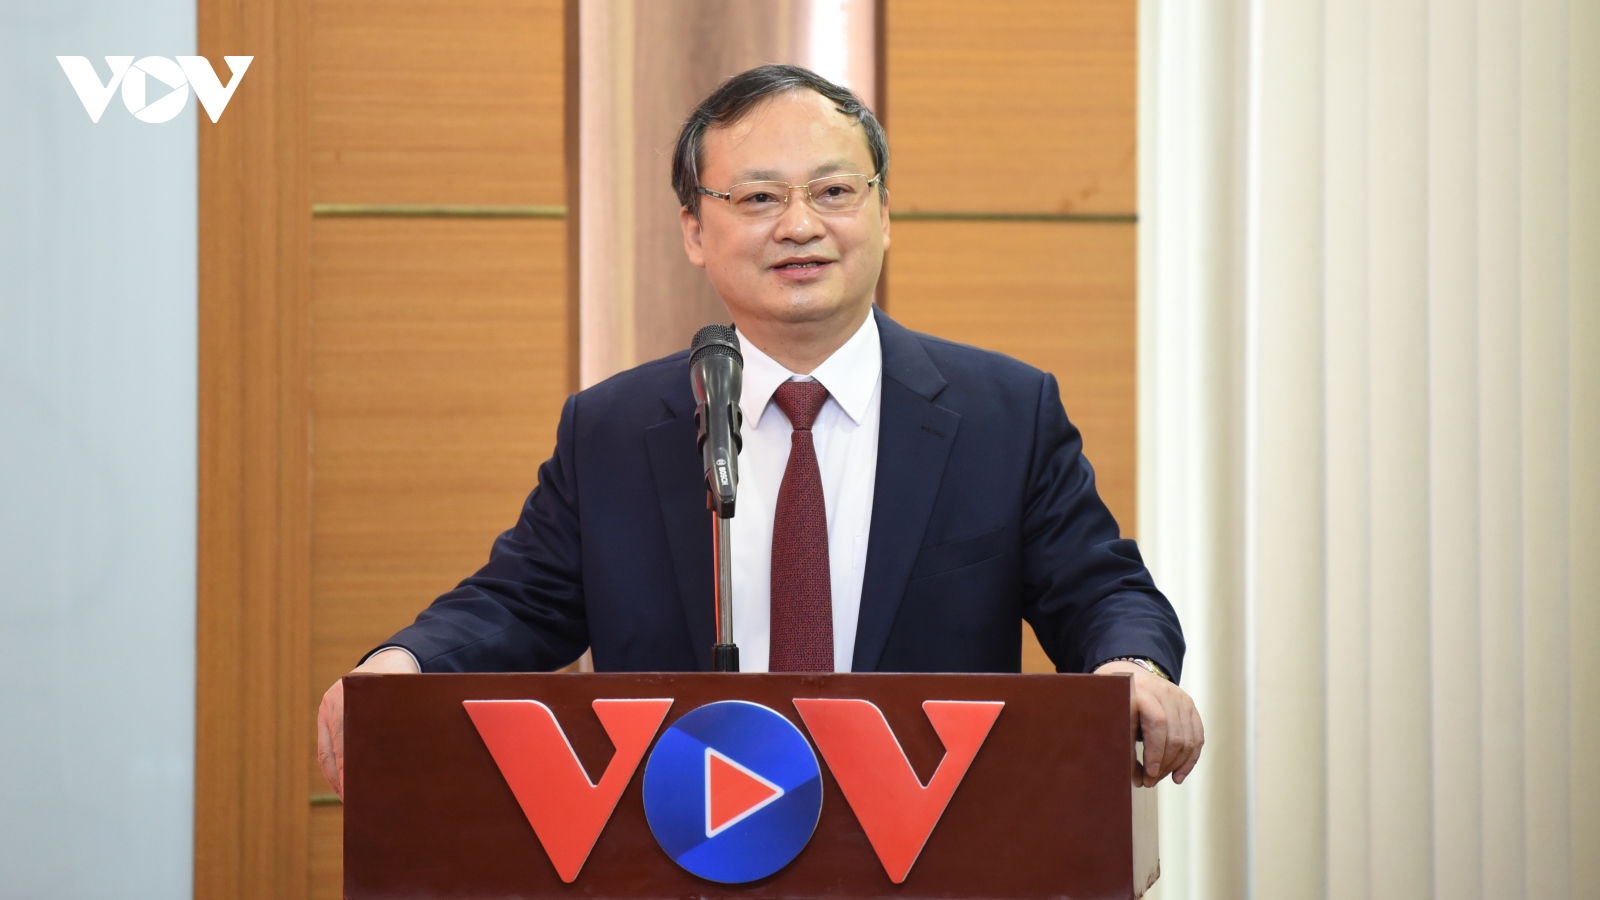 Ông Đỗ Tiến Sỹ giữ chức Bí thư Đảng ủy Đài Tiếng nói Việt Nam